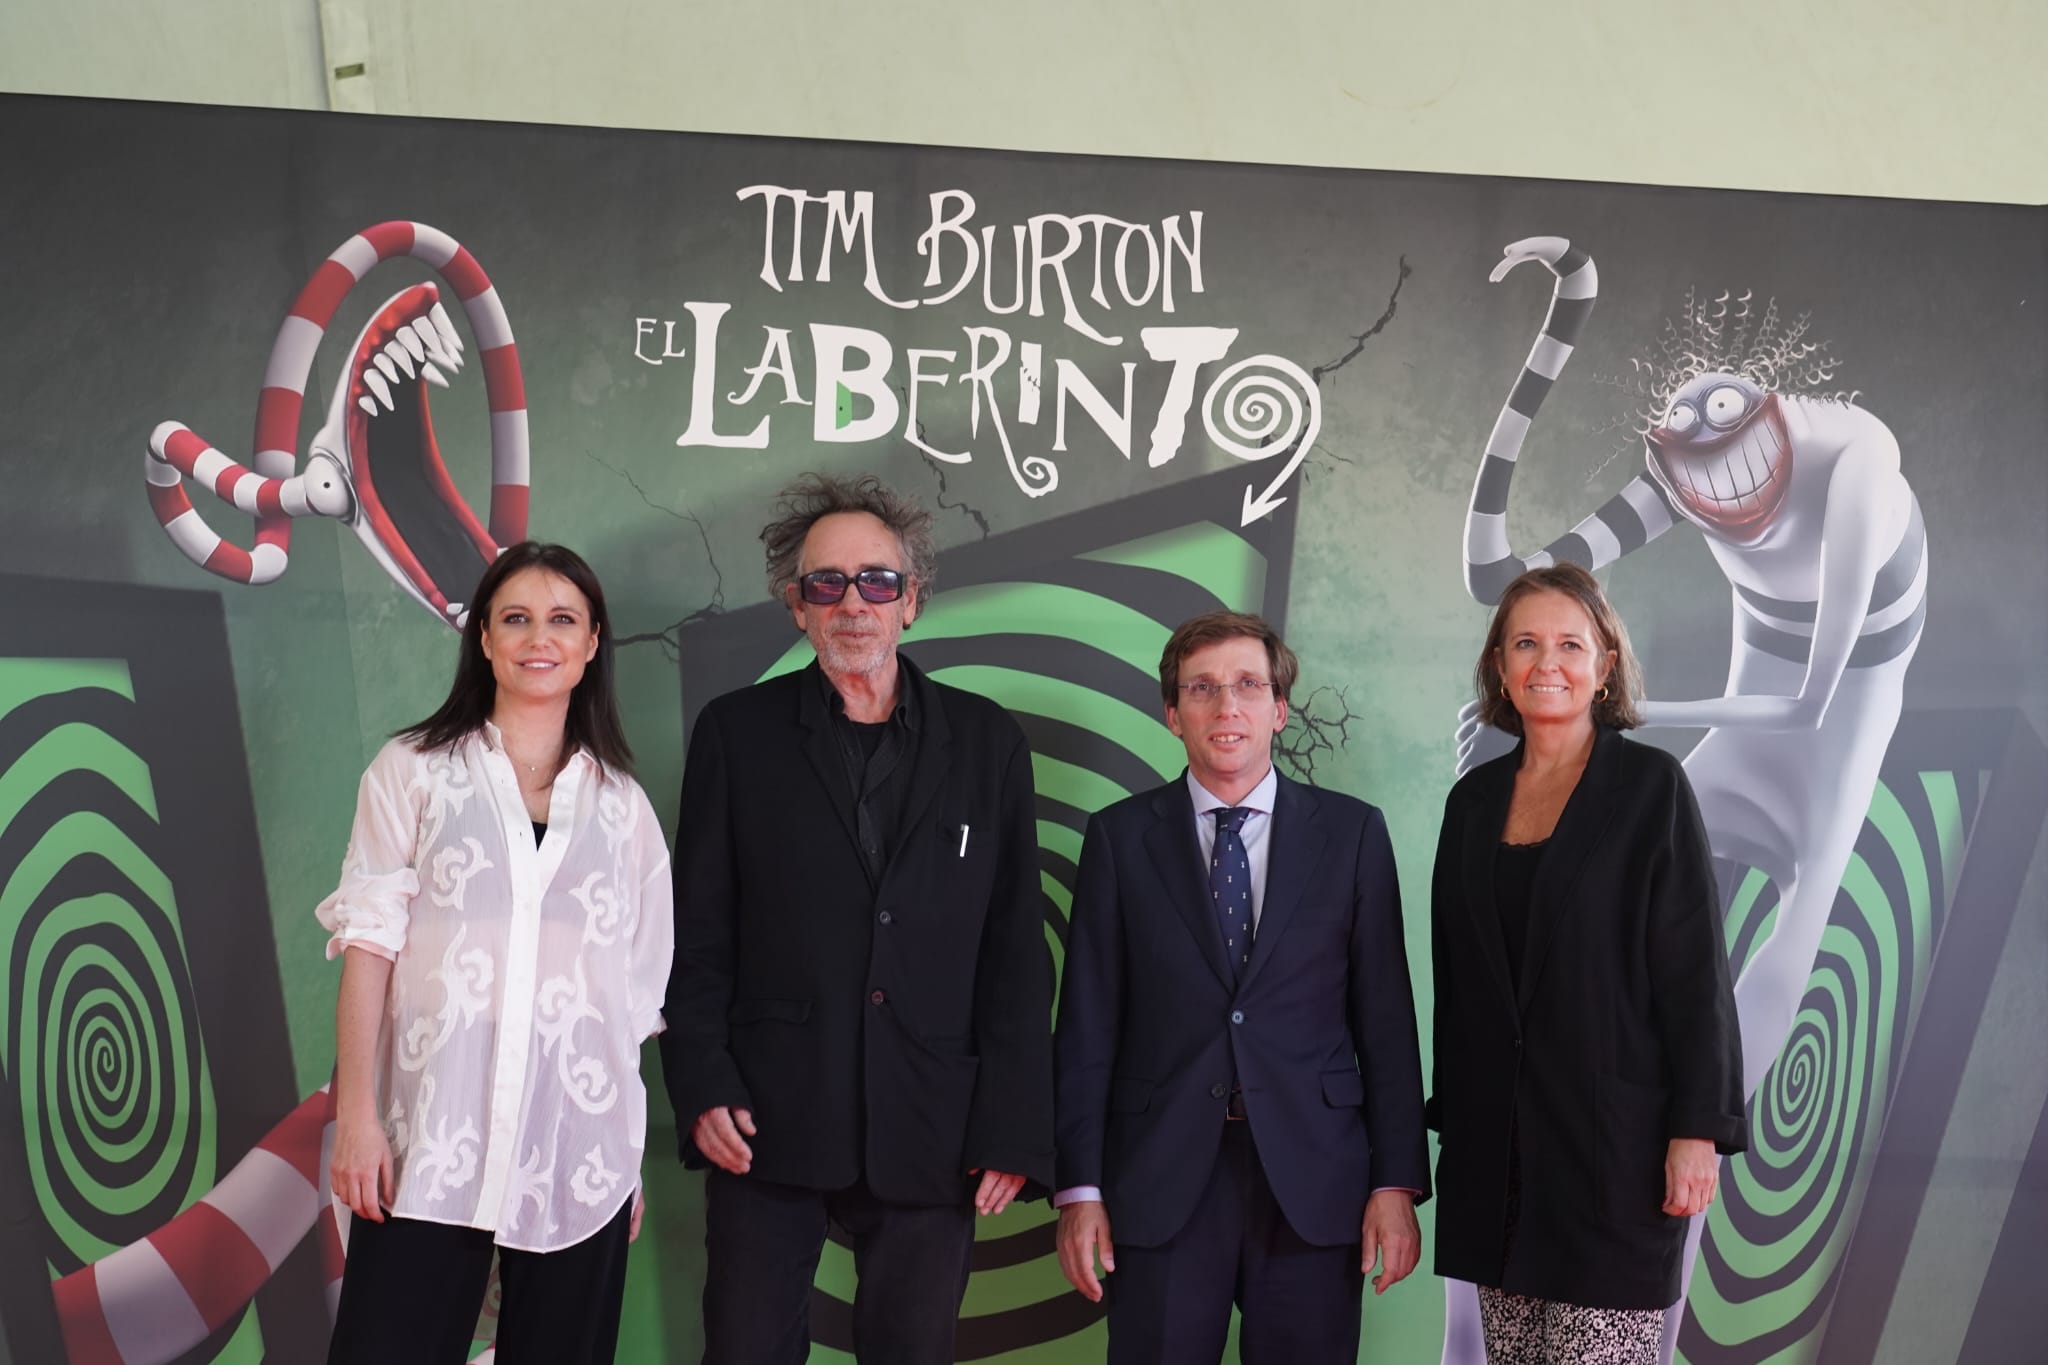 Tim Burton junto al alcalde de Madrid, José Luis Martínez-Almeida.